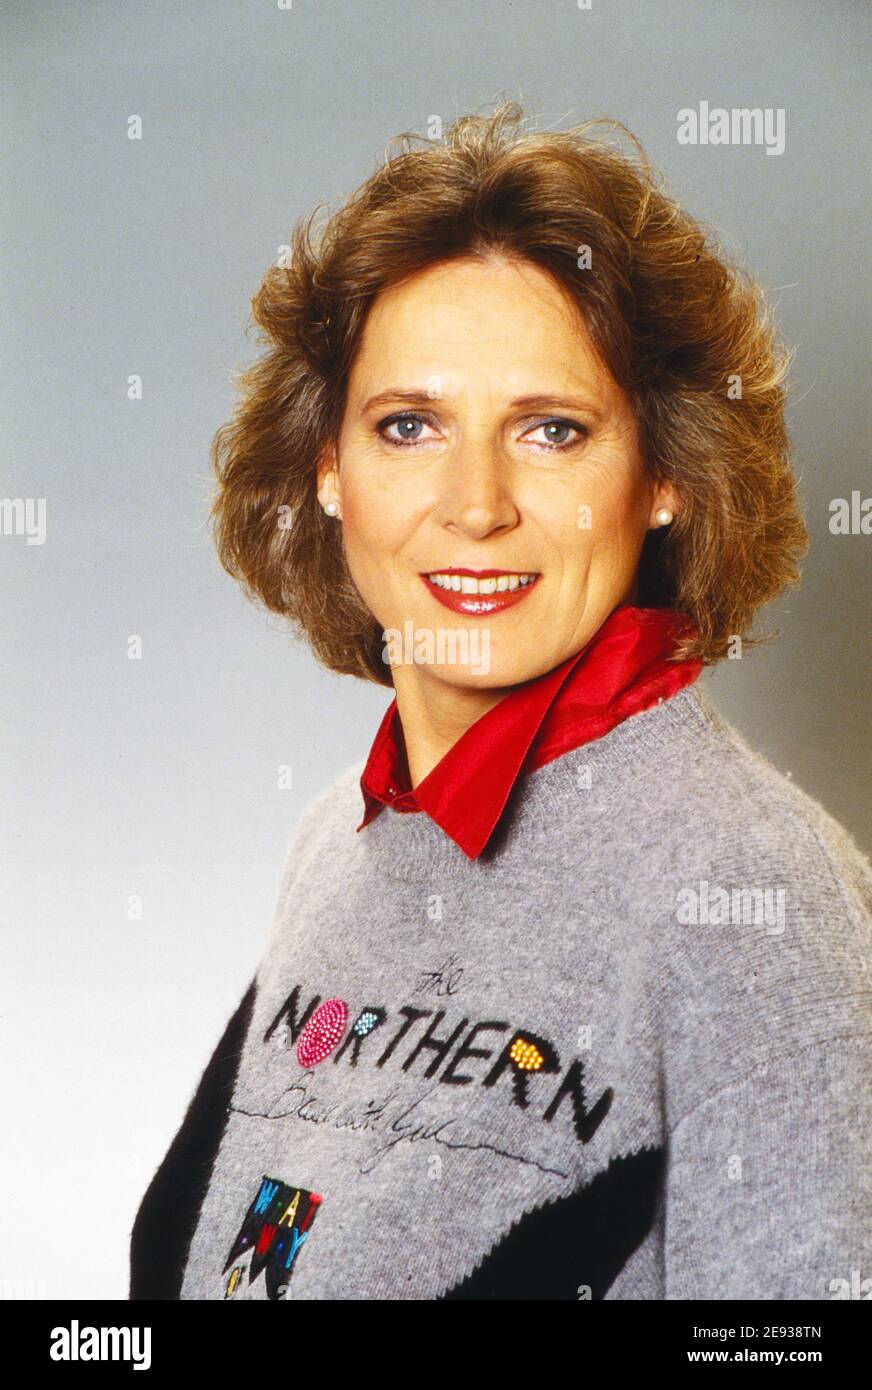 Gisela Mahlmann, deutsche Fernsehjournalistin und China Korrespondentin für das ZDF in Mainz, Deutschland um 1993. Foto Stock